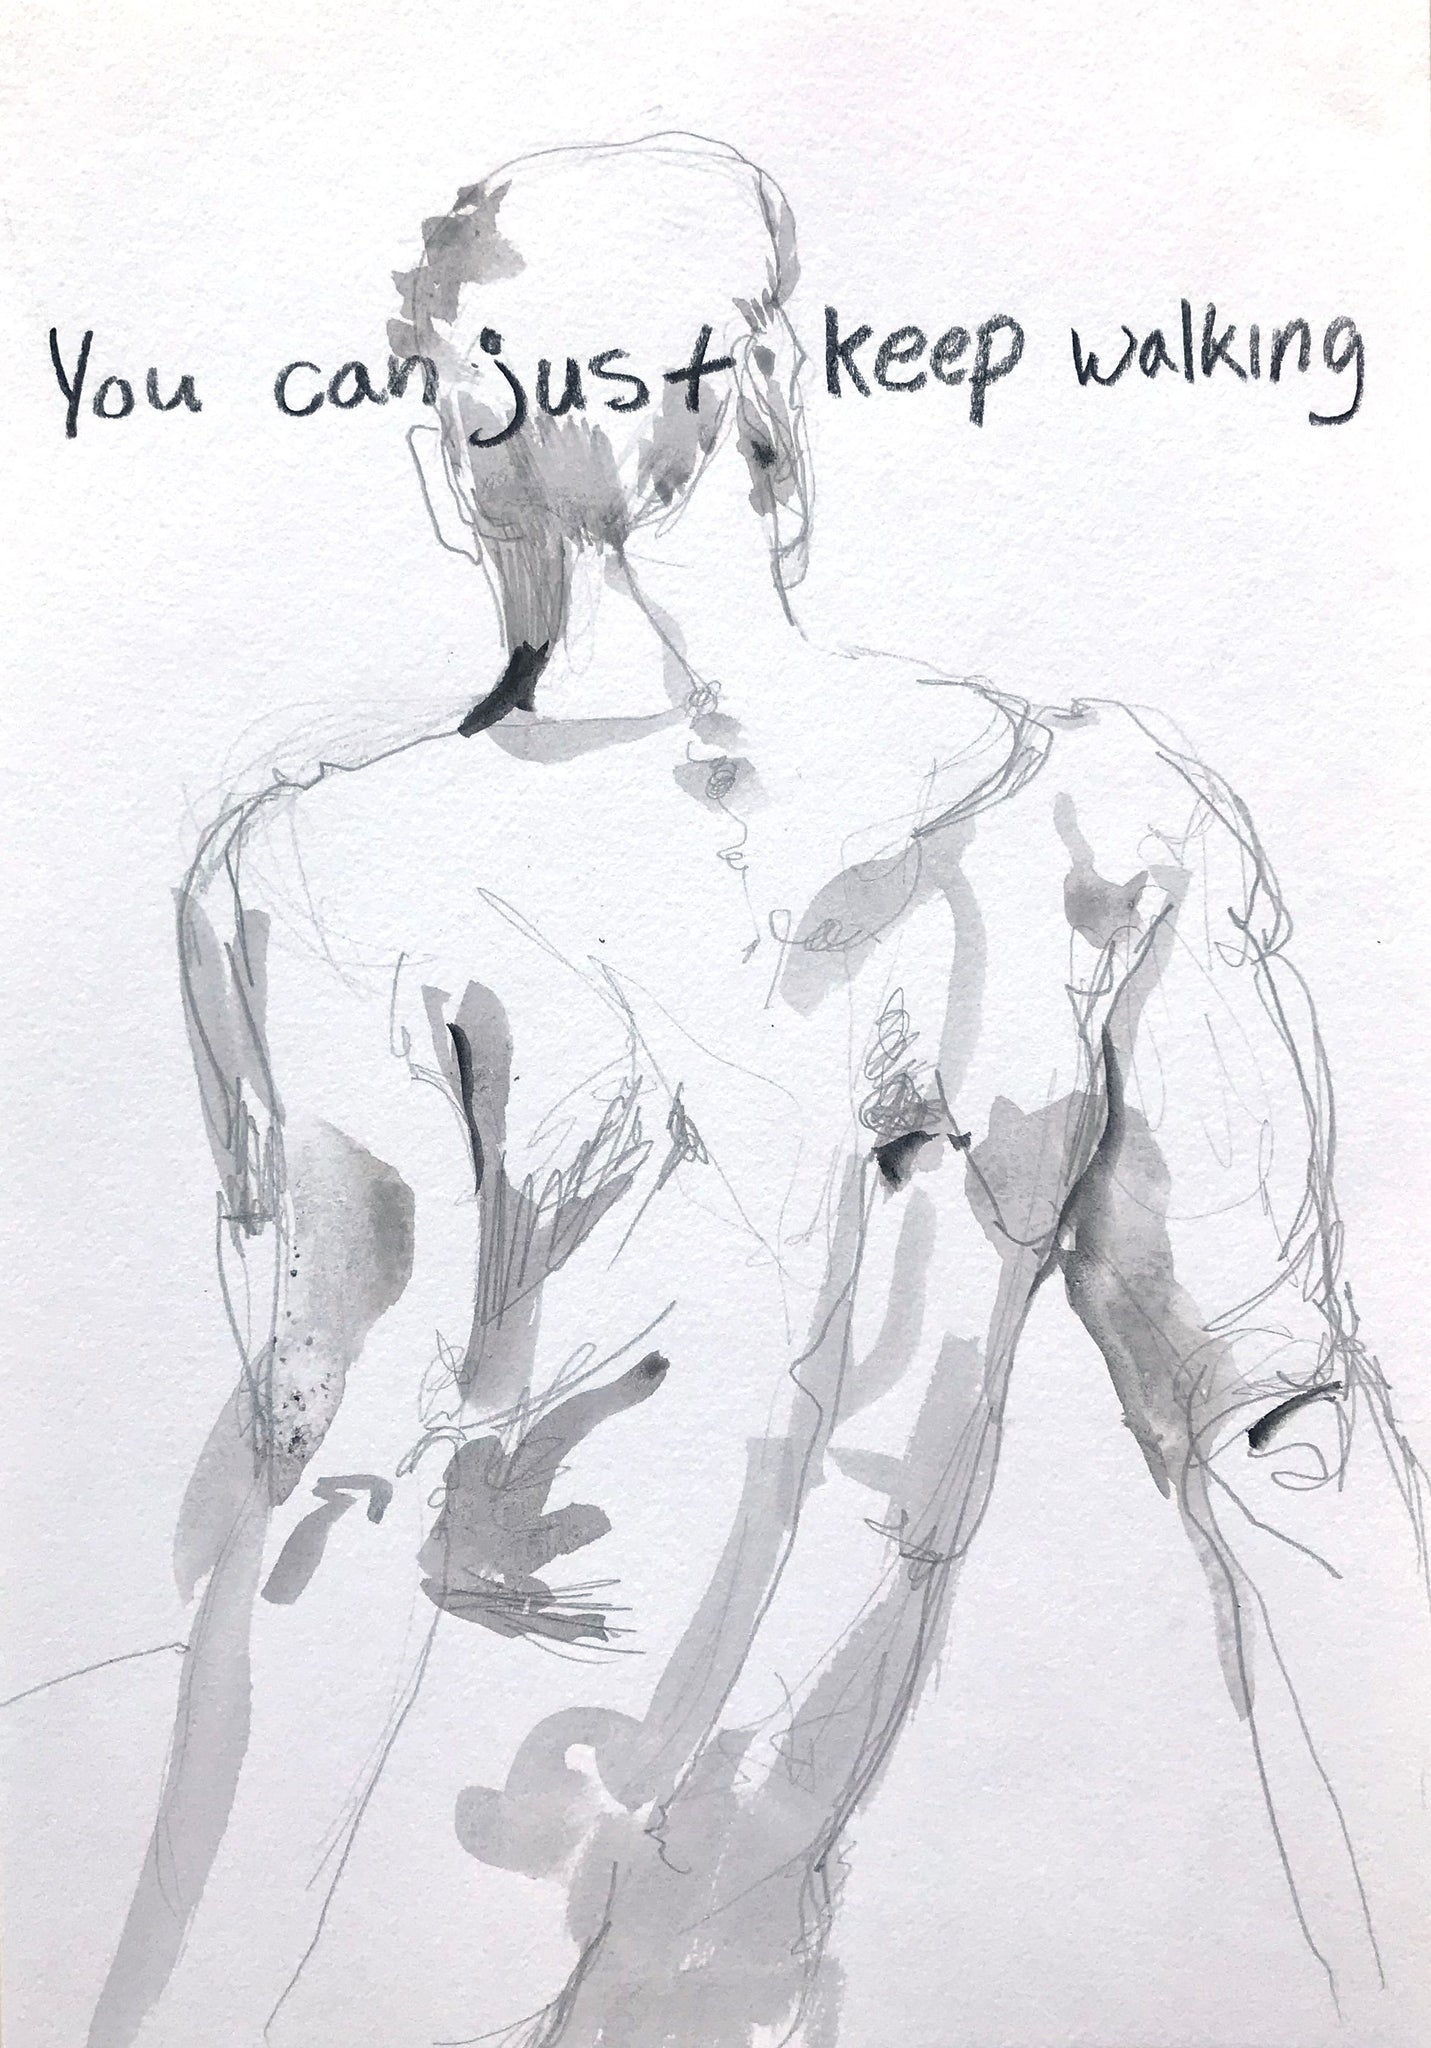 Skye Cleary, "You Can Keep Walking"